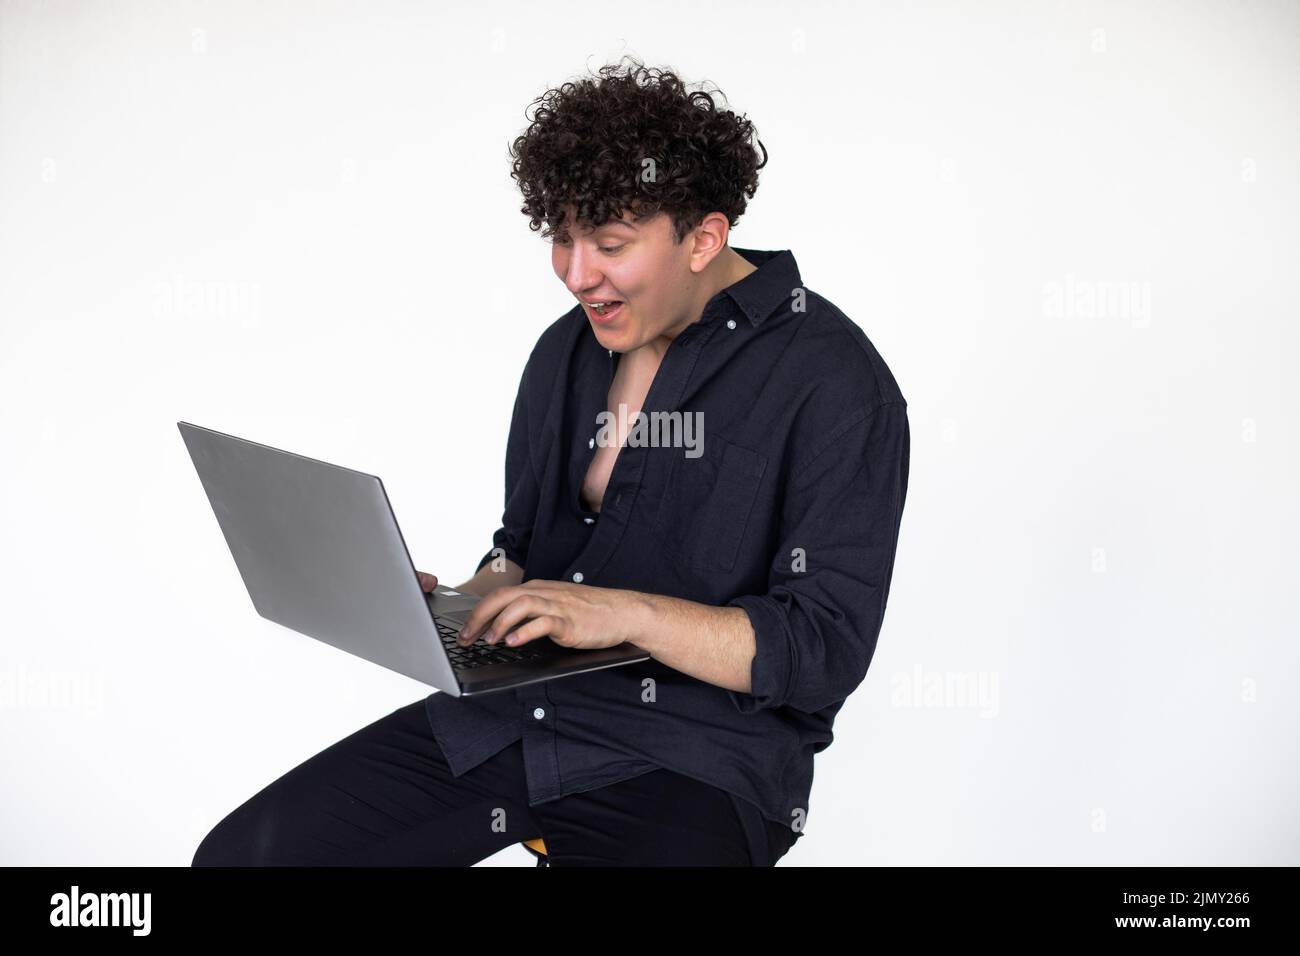 Jeune homme mauriquement dans l'aspect noir total assis sur une chaise et jouant à des jeux d'ordinateur sur ordinateur portable moderne, fond gris studio. Absorption dans le jeu Banque D'Images